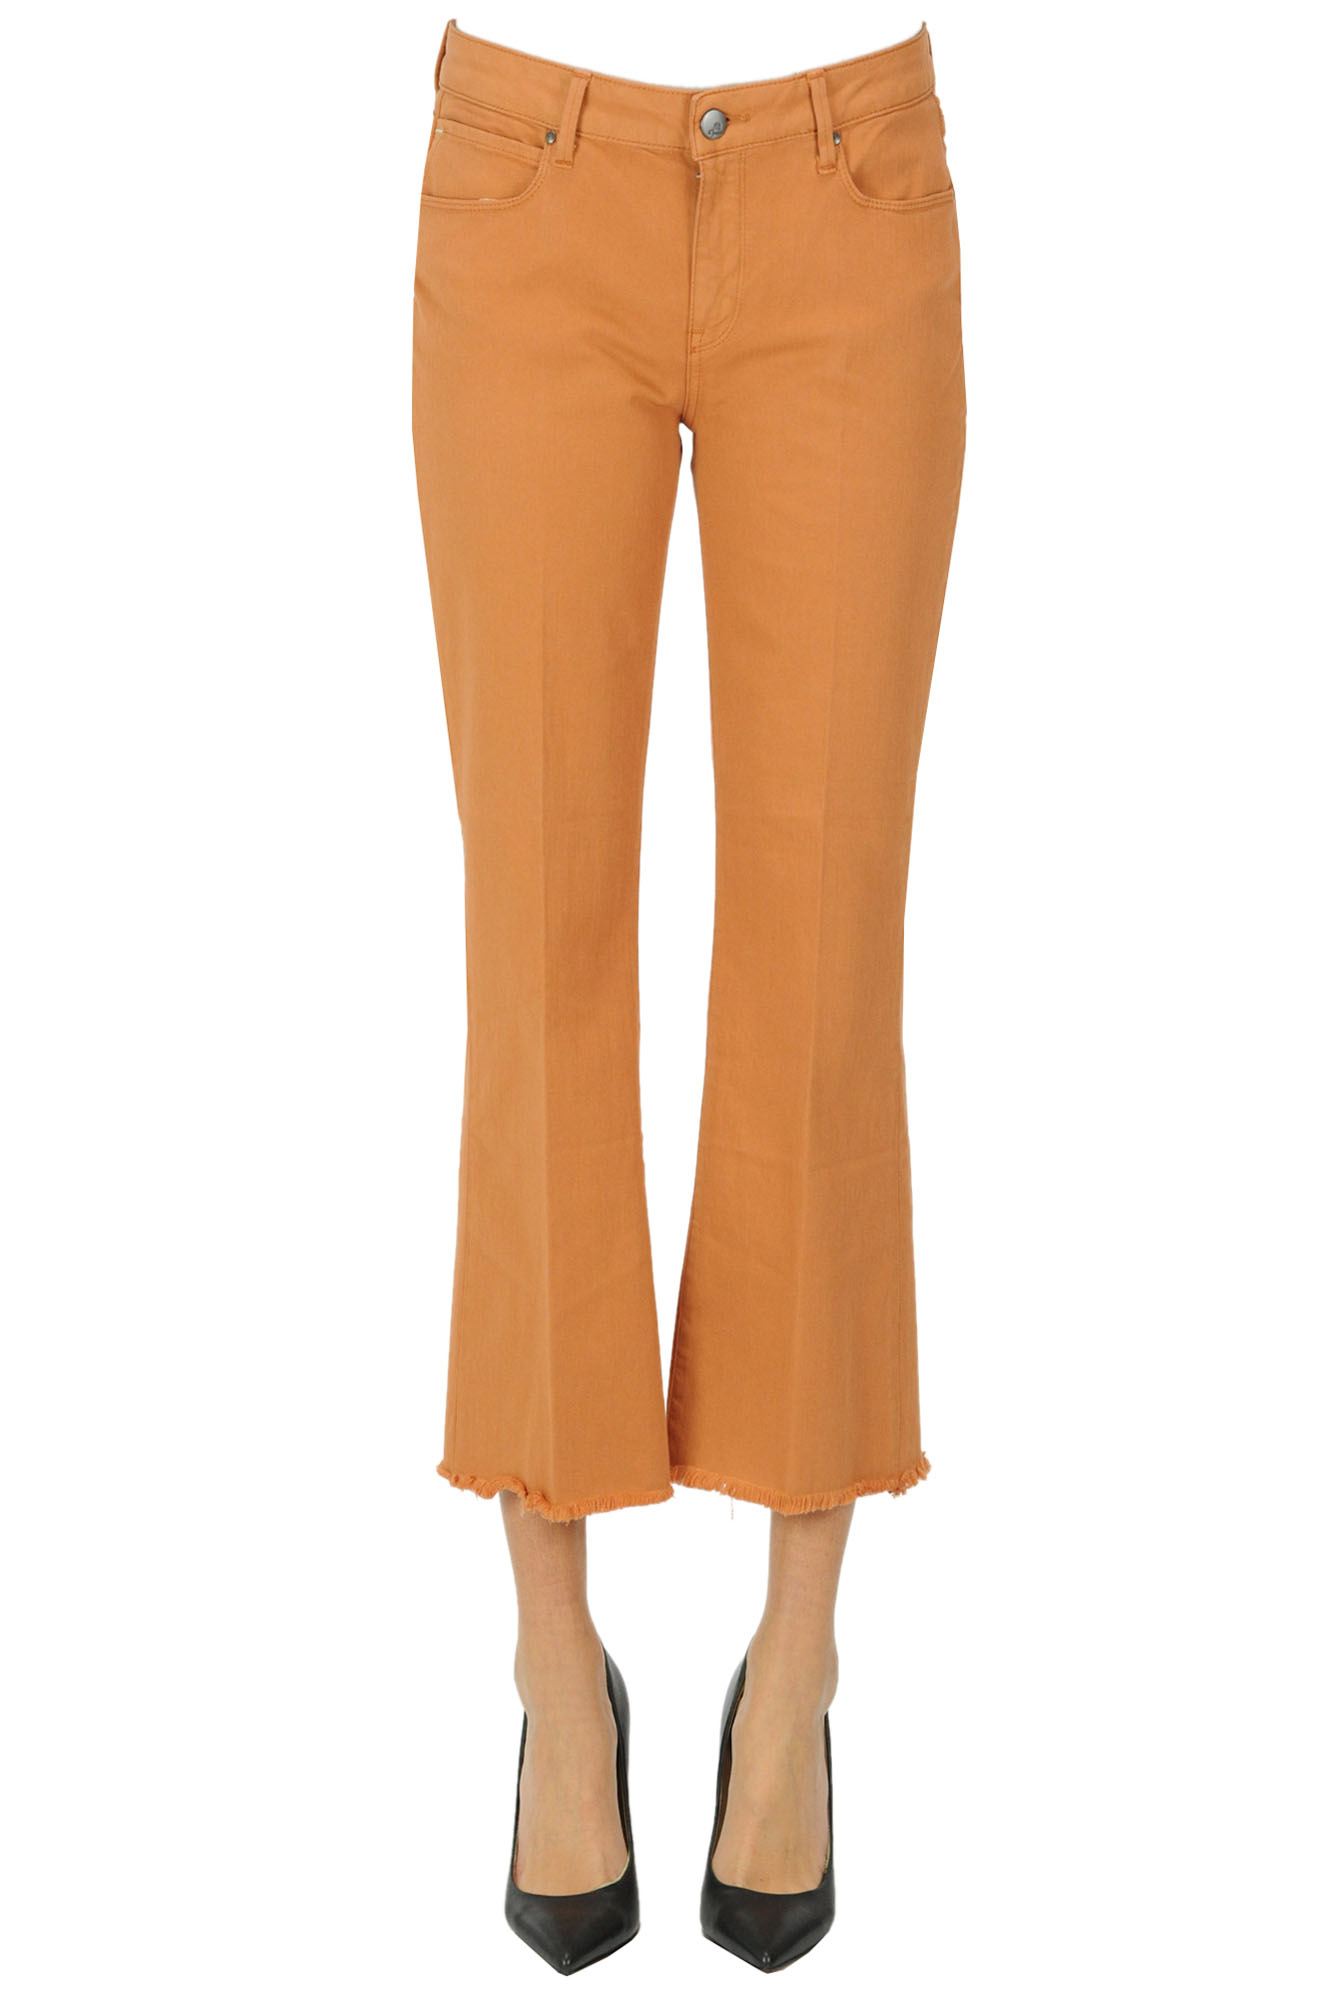 Atelier Cigala's Cropped Jeans In Orange